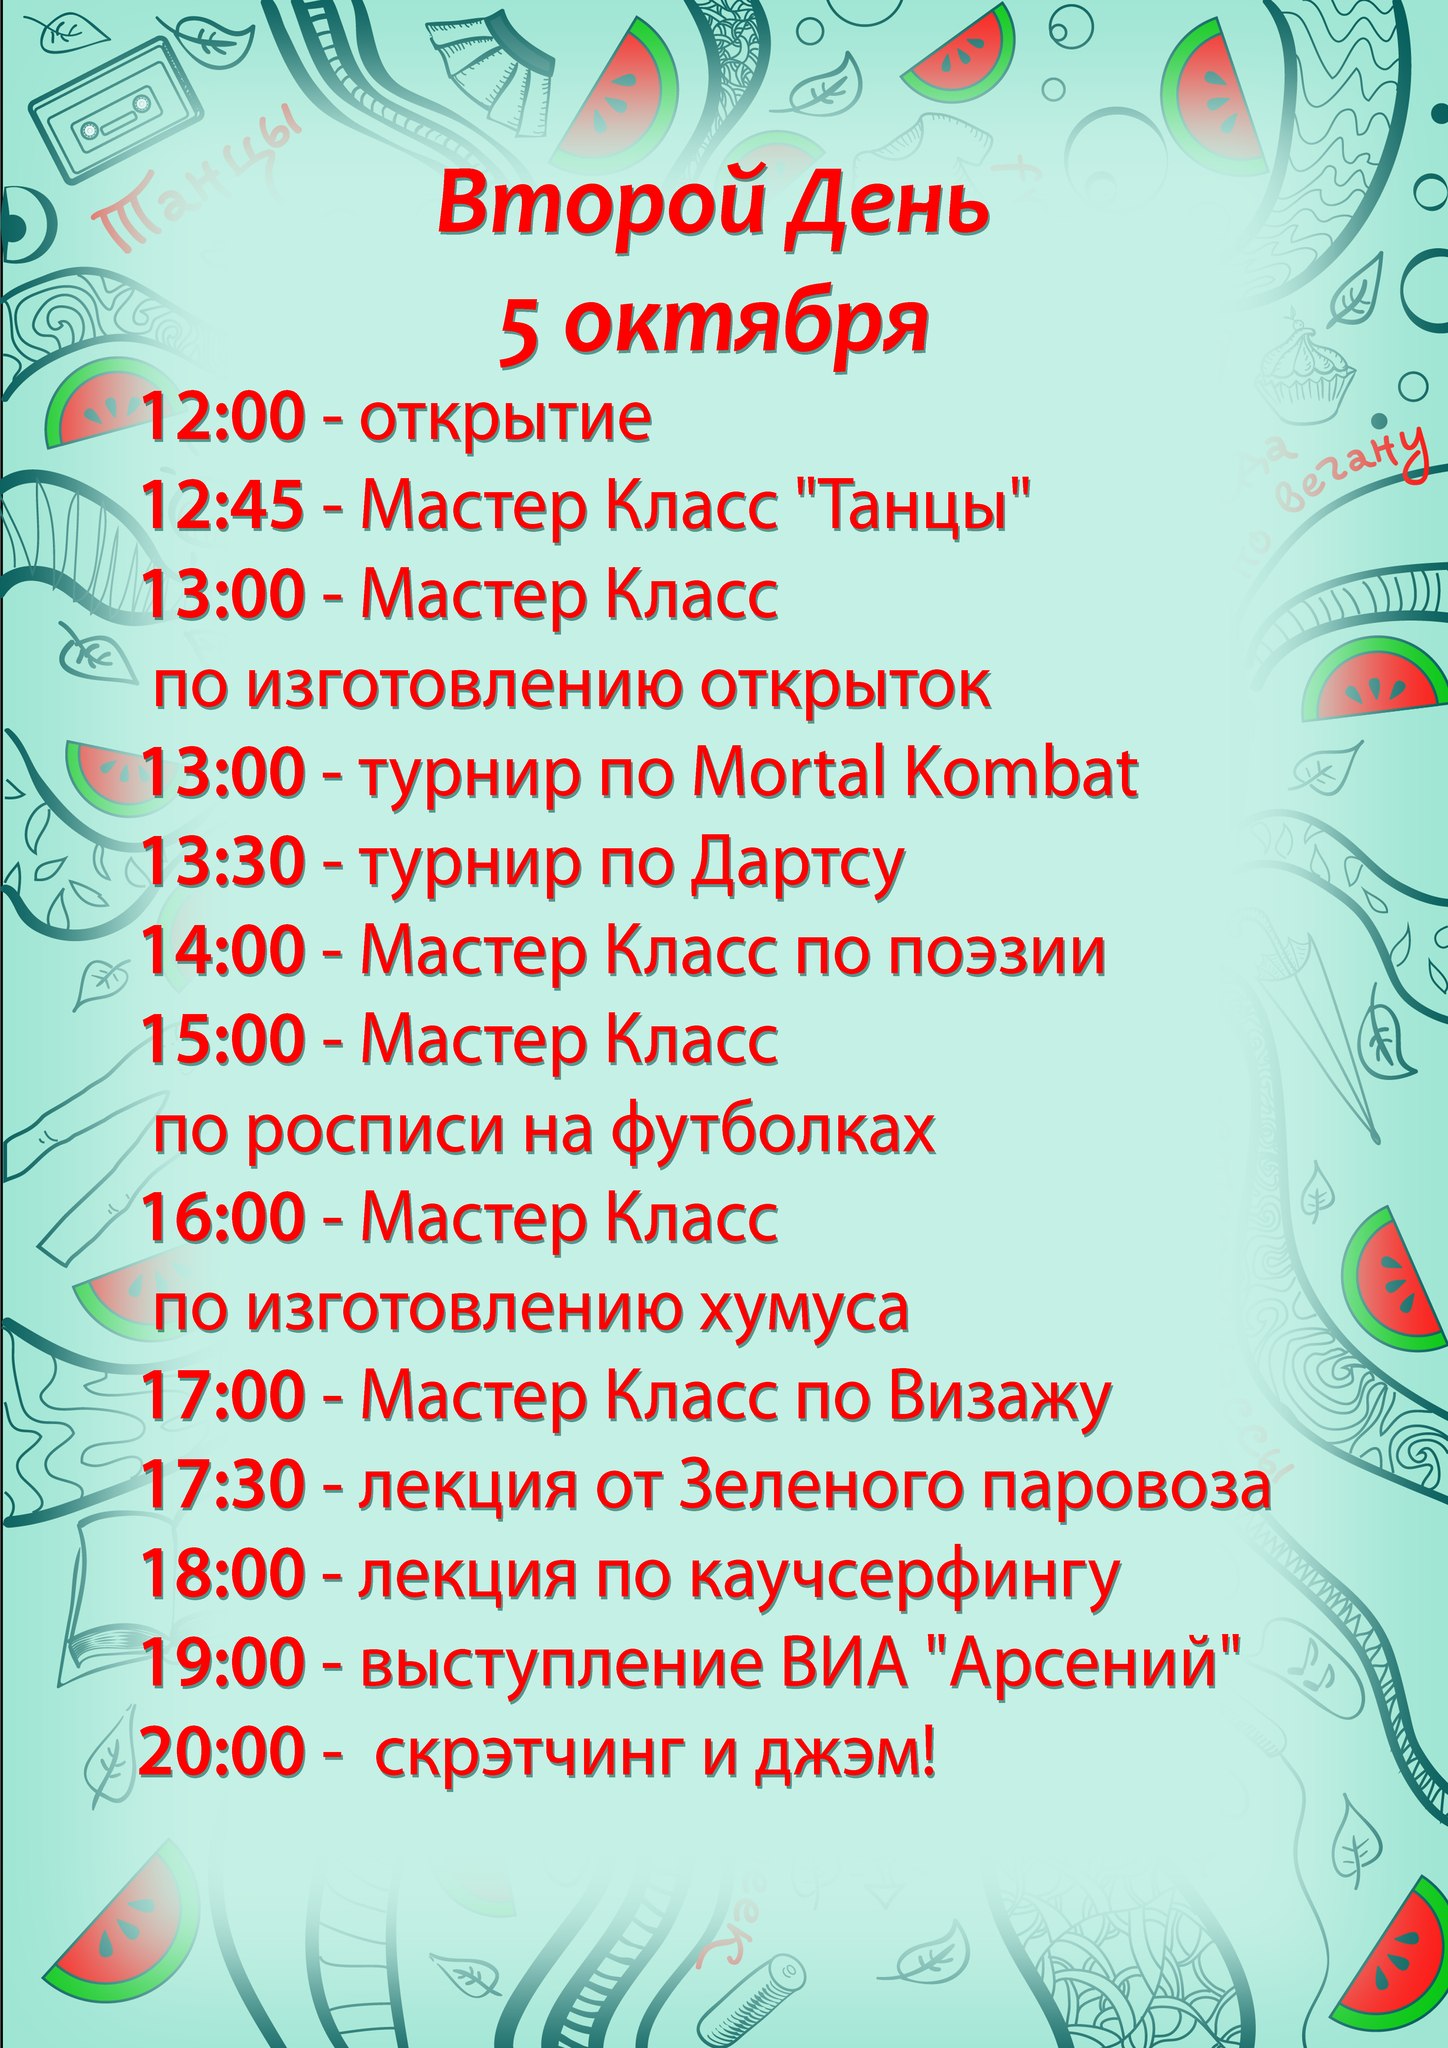 4—5 октября в Ижевске в «Доме архитектора» проходит седьмая бесплатная ярмарка Freemarket. Вход свободный.